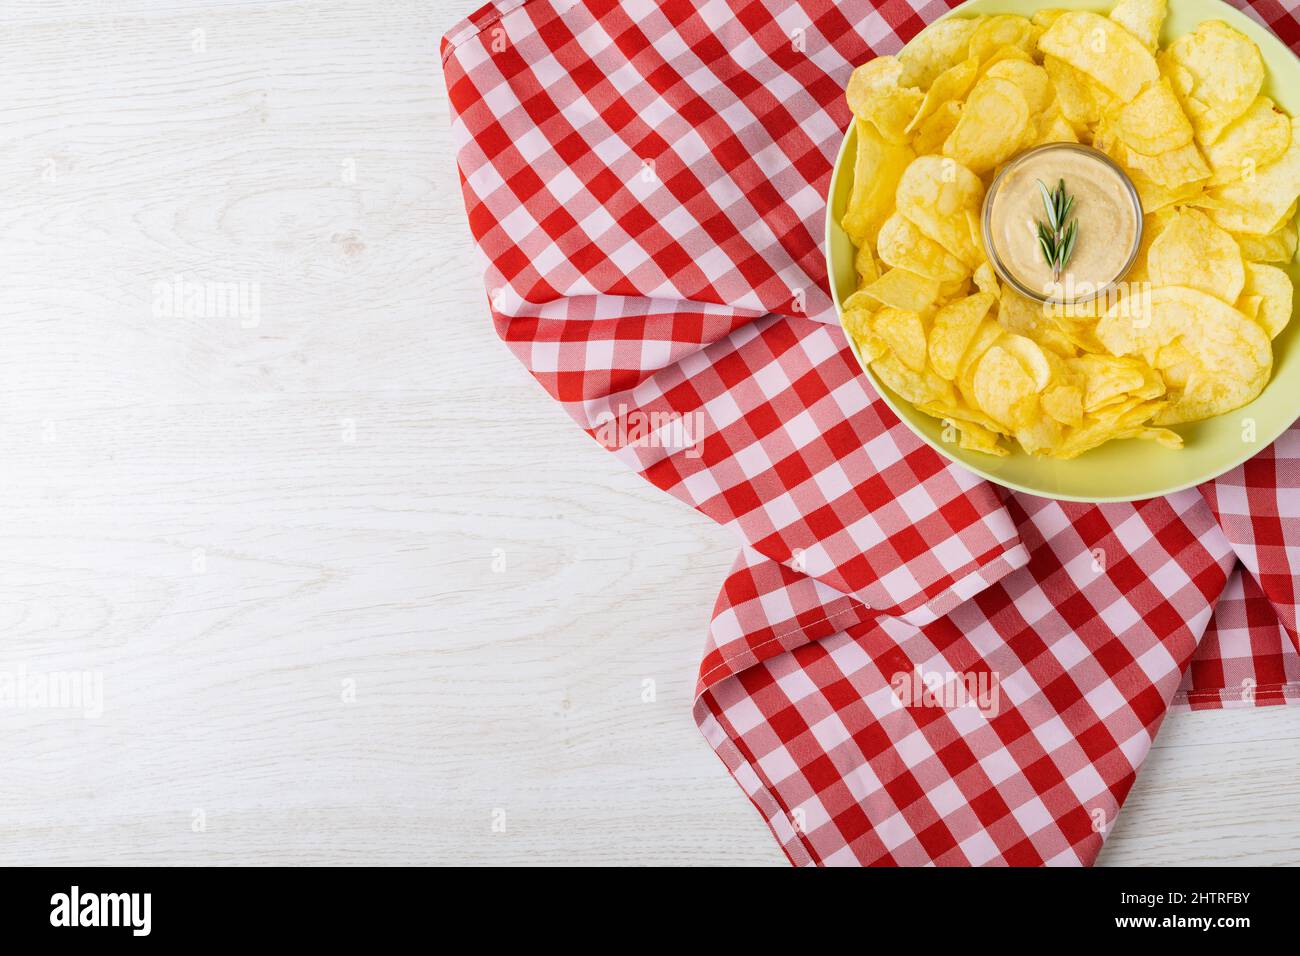 Blick von oben auf die Sauce inmitten von Kartoffelchips, die auf einem Teller auf karierter Serviette am Tisch serviert werden Stockfoto